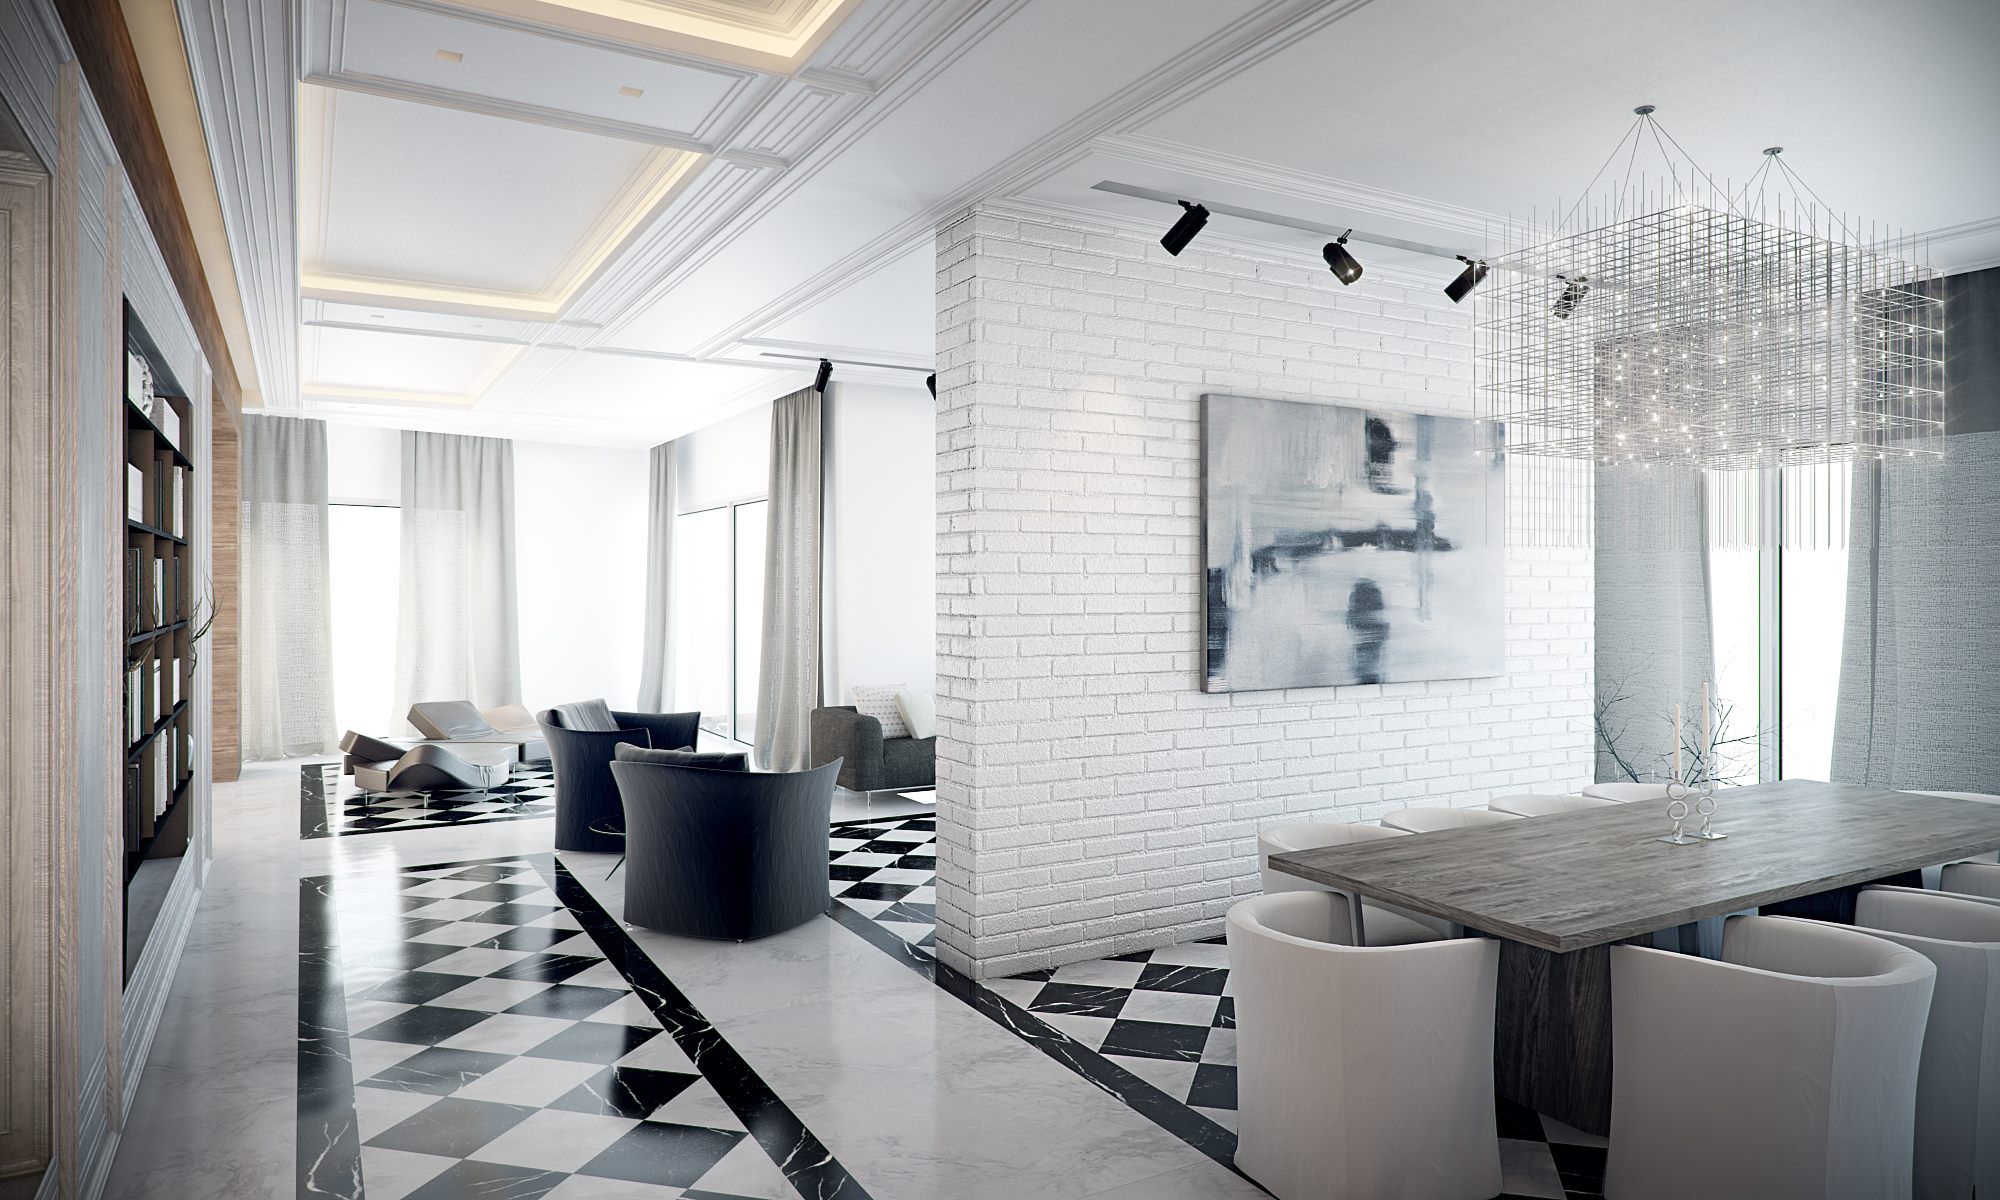 White Floor Tiles Interior Design, Black And White Tile Floor Living Room